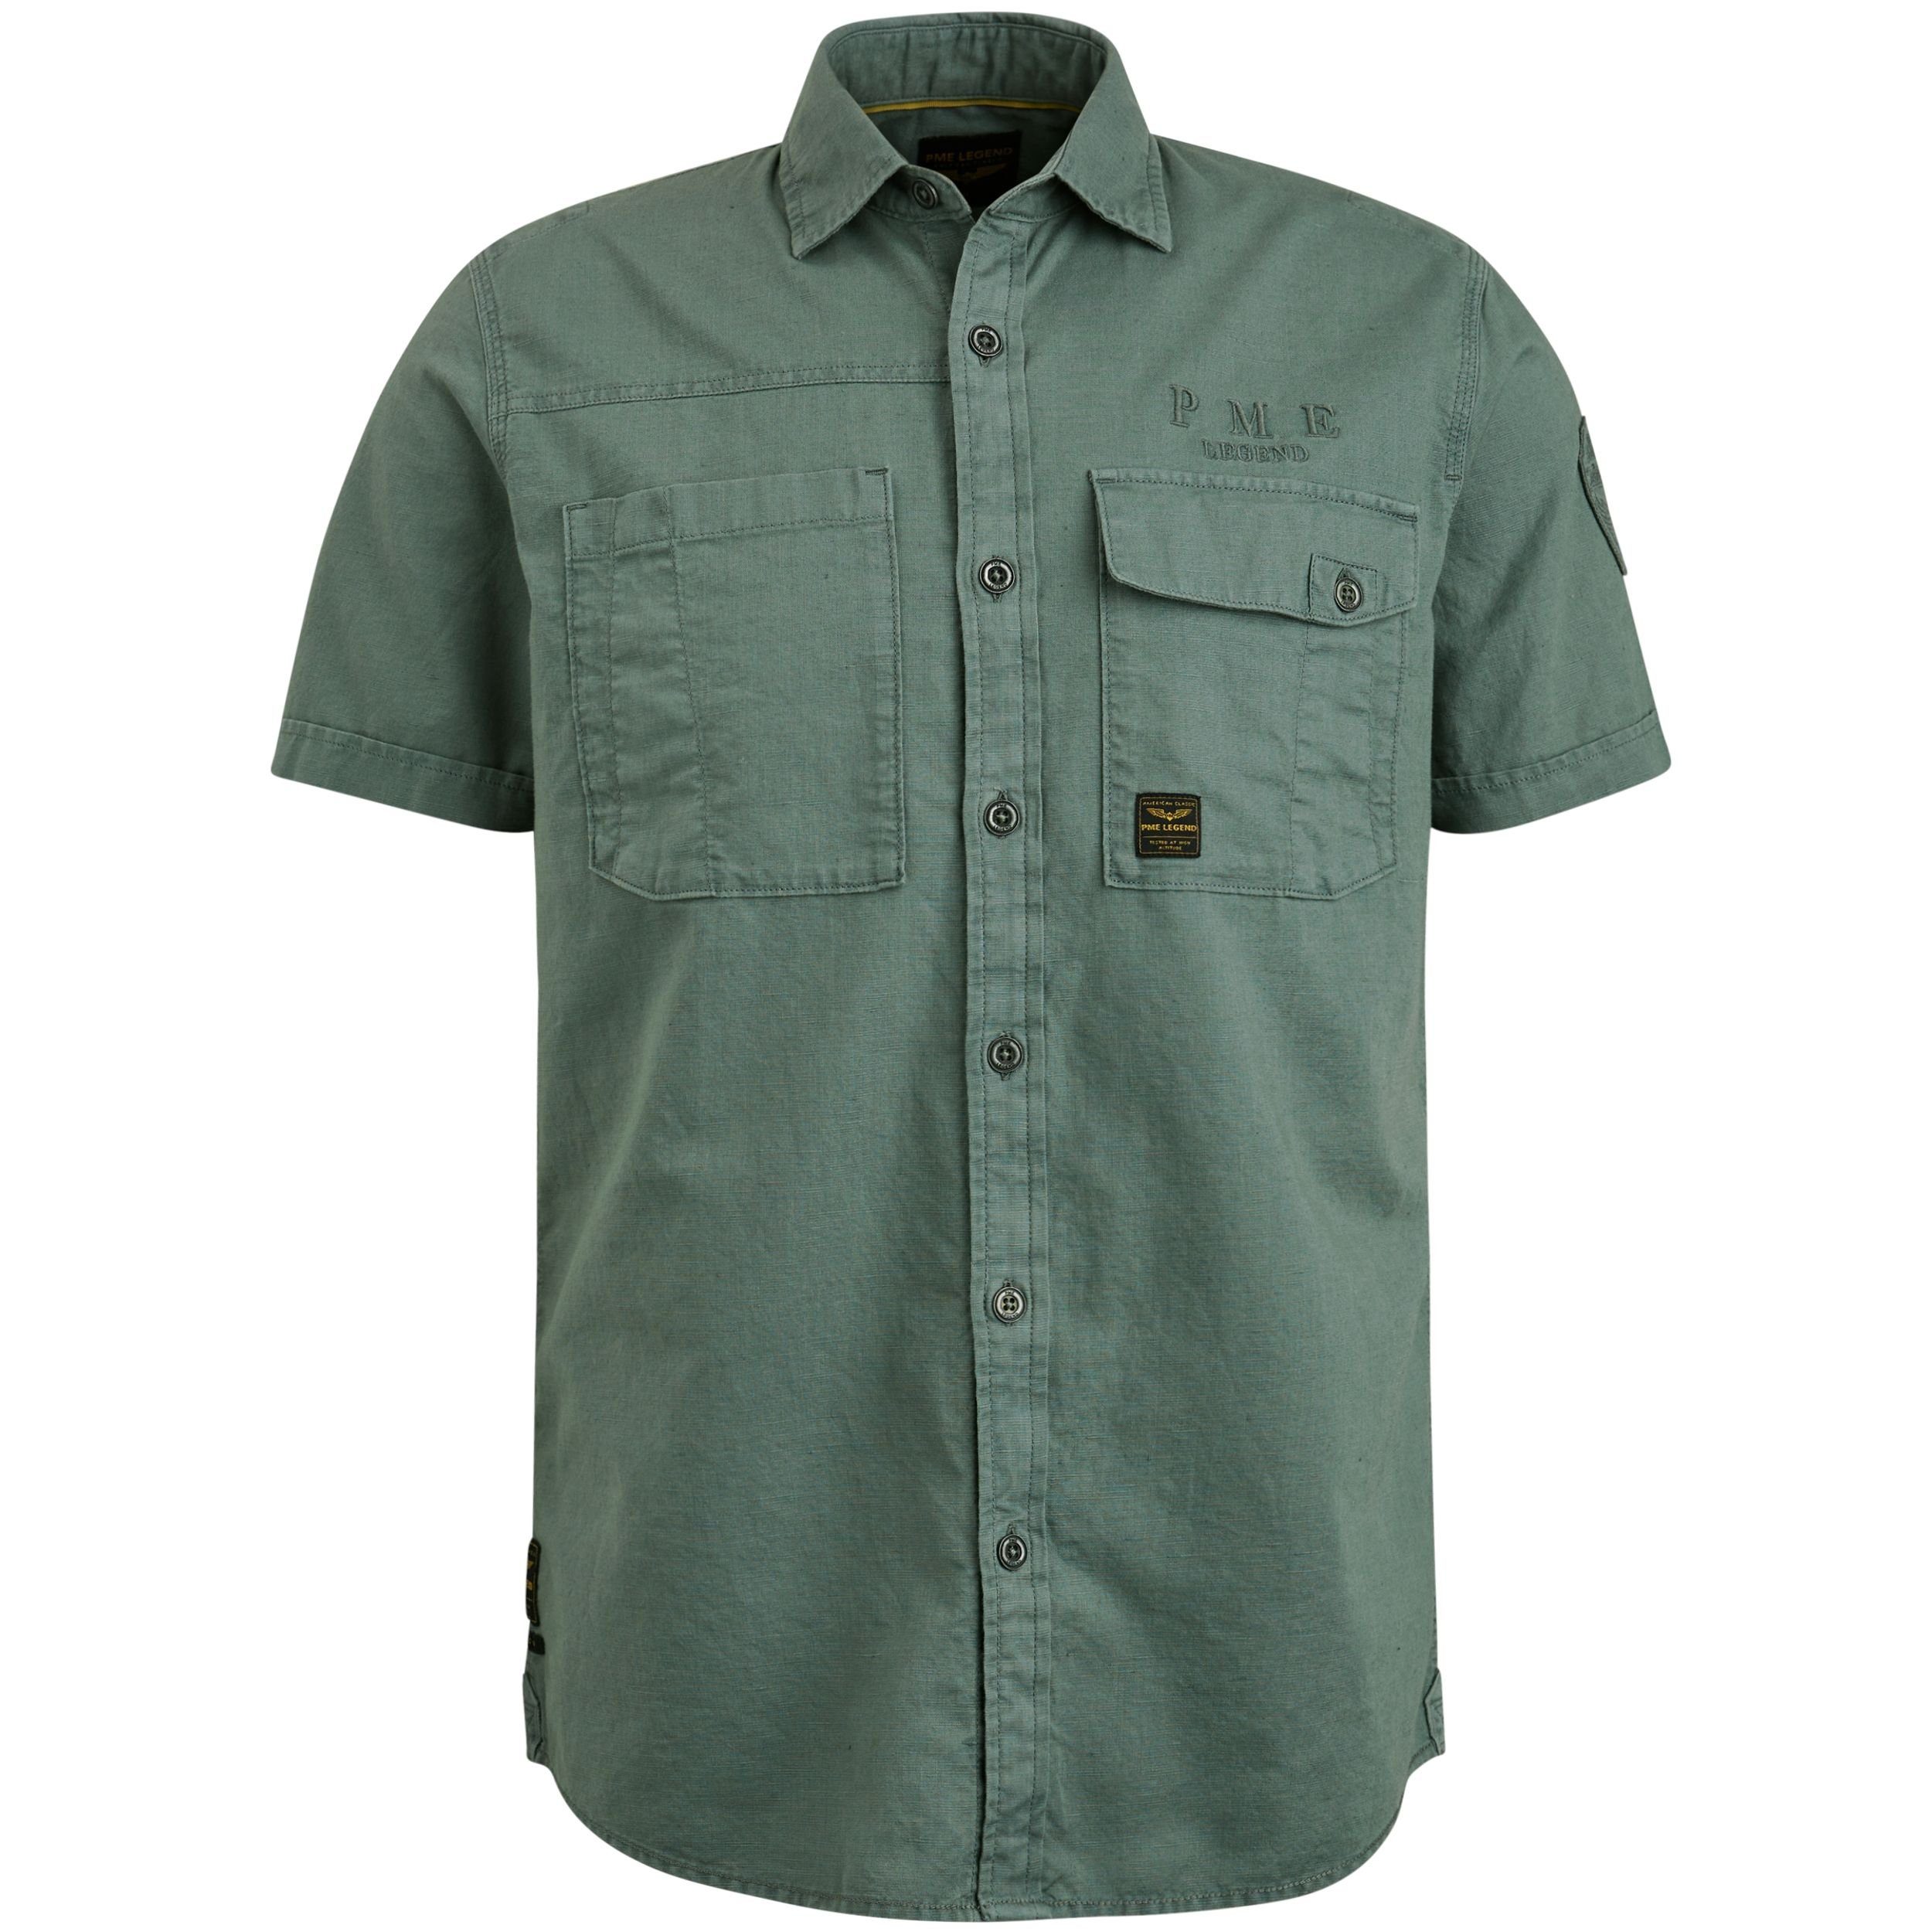 PME LEGEND Outdoorhemd Short Sleeve Shirt Ctn Linen Cargo Walker